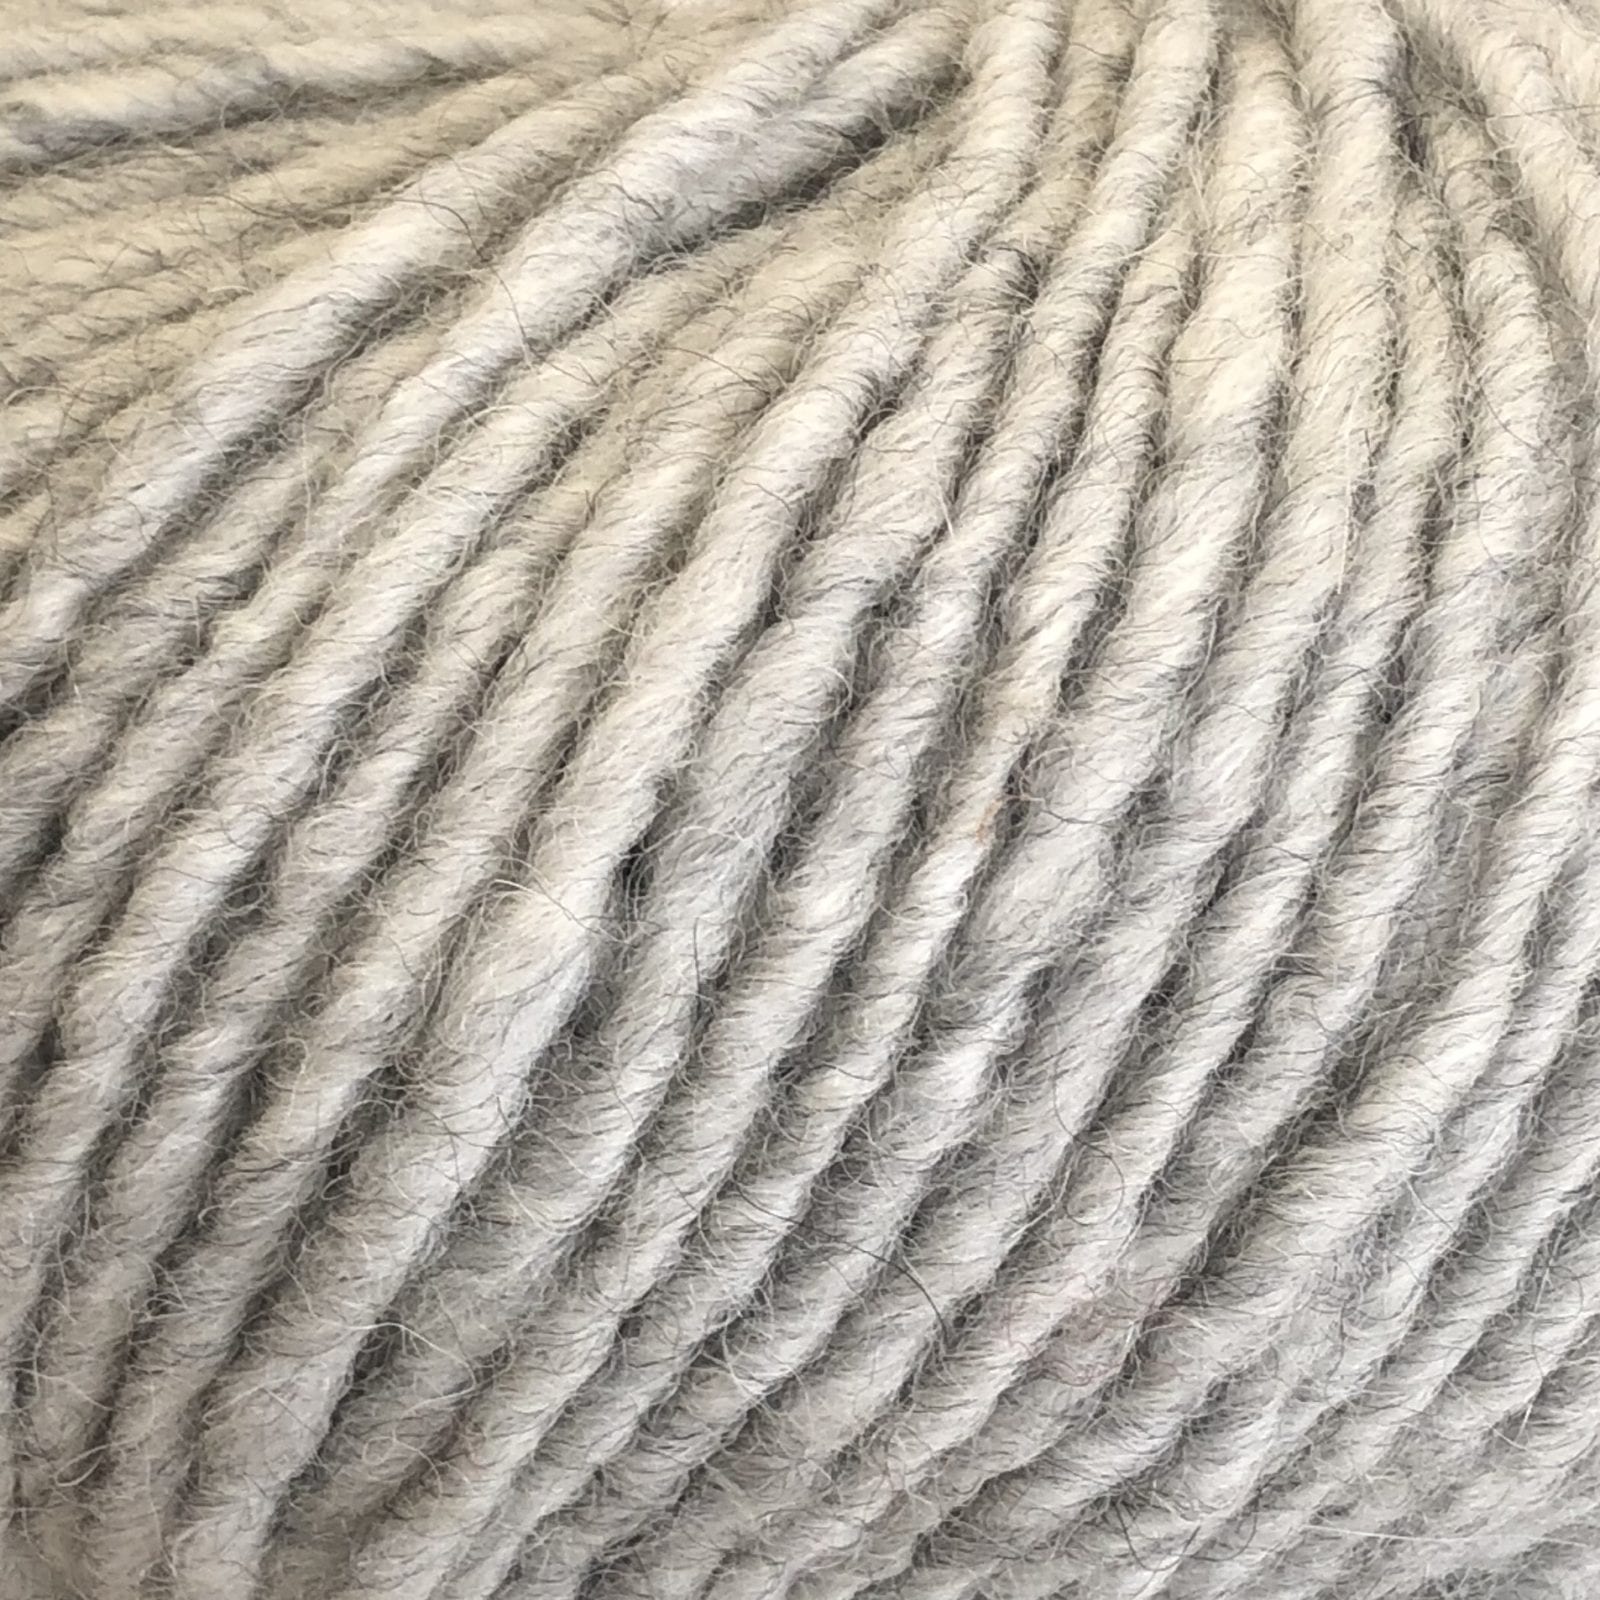 Sesia Bunny Chunky | Virgin wool, Alpaca, Acrylic blend Rust 8112